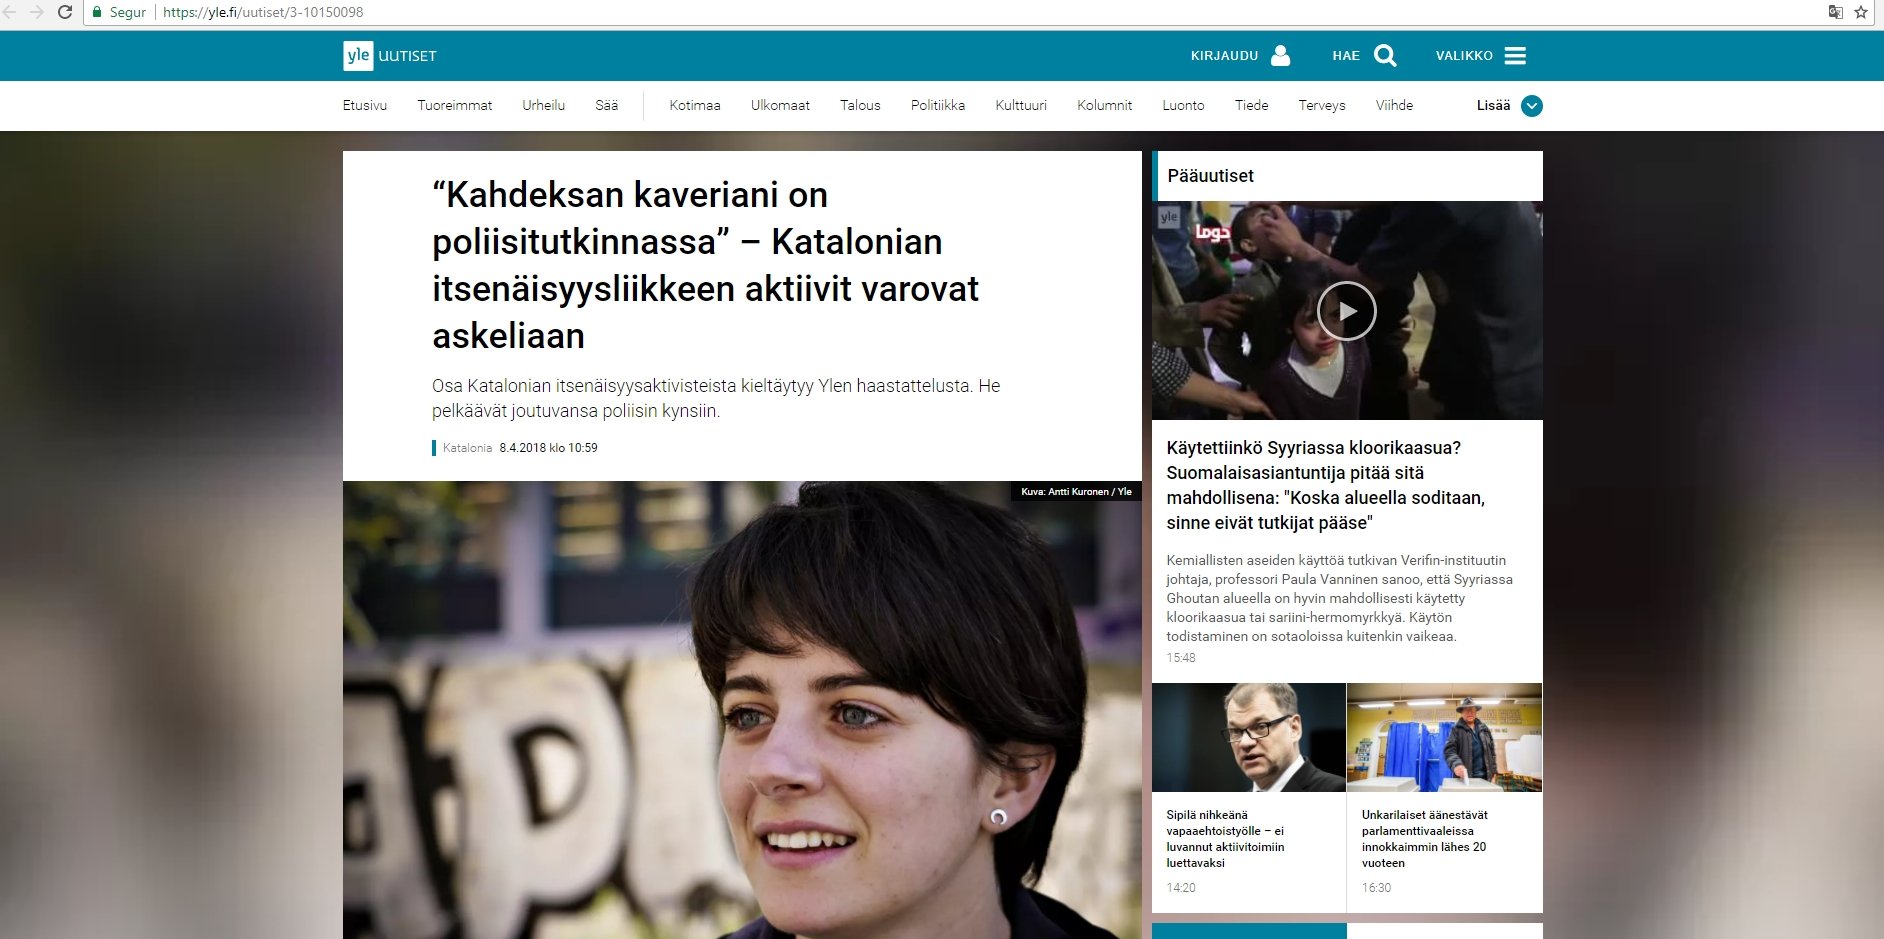 La radio finlandesa se hace eco de la persecución a los CDR